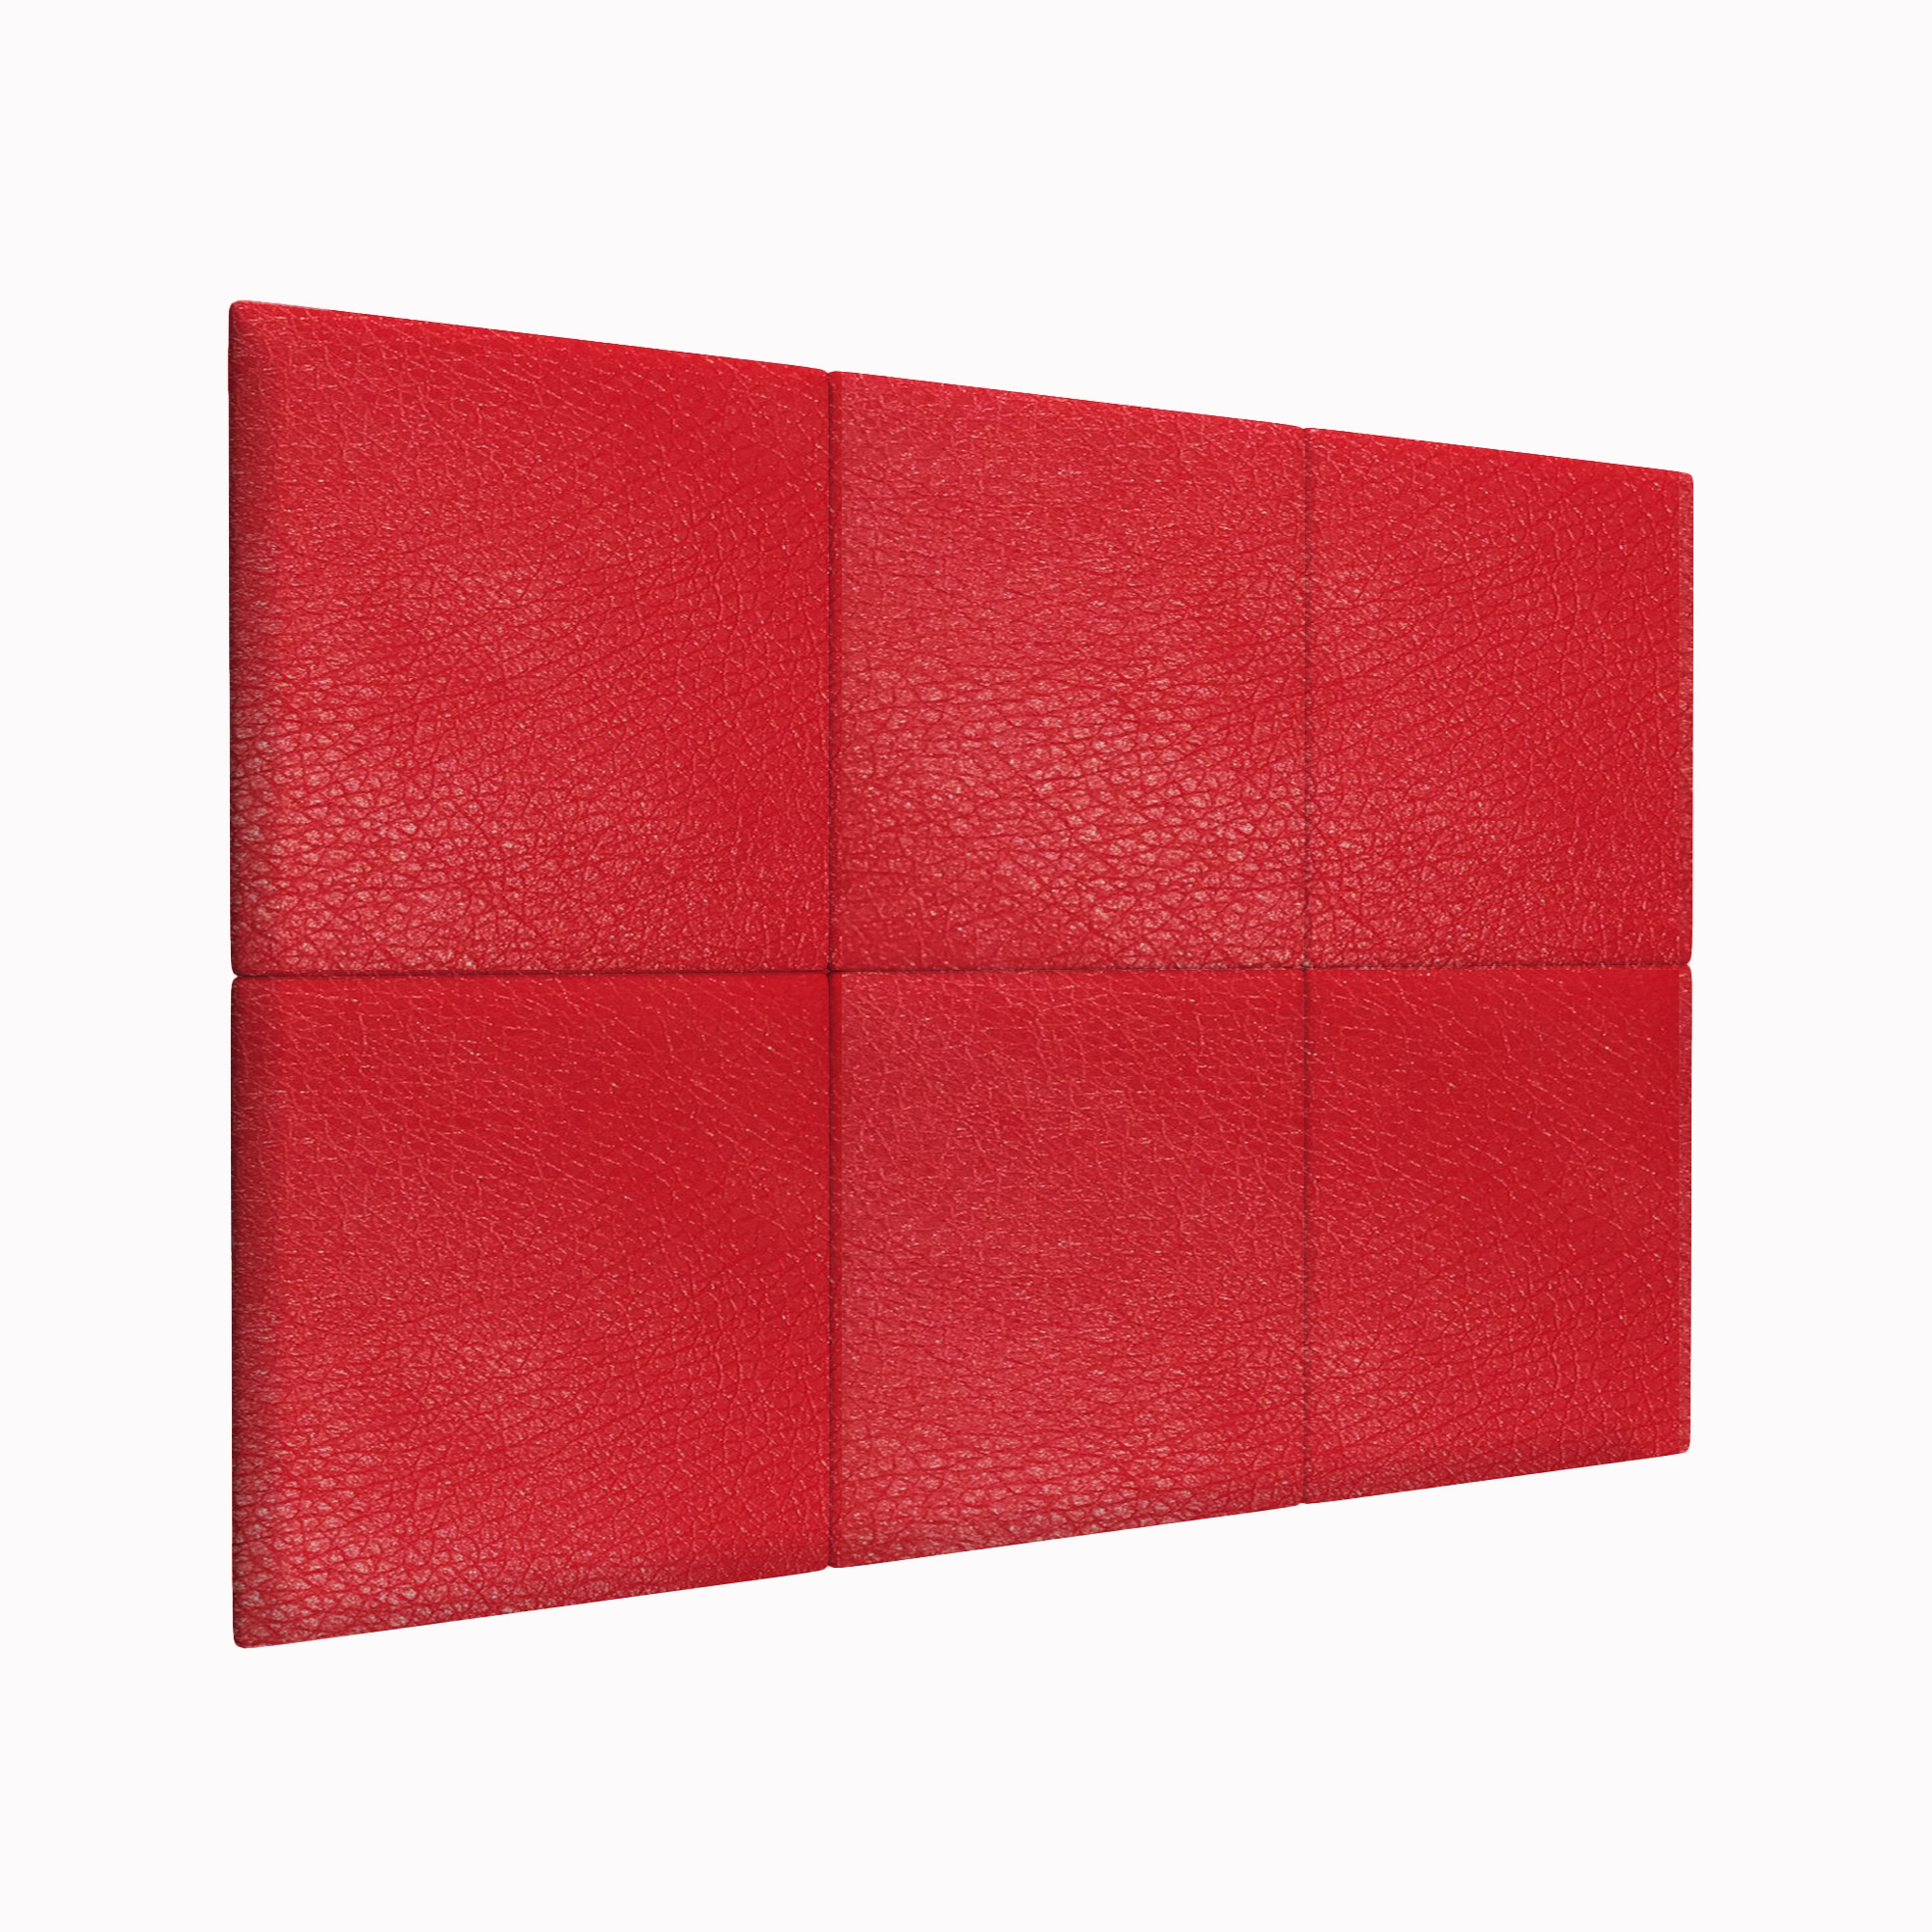 Шумо звукоизоляционные мягкие панели Eco Leather Red 50х50 см 2 шт.